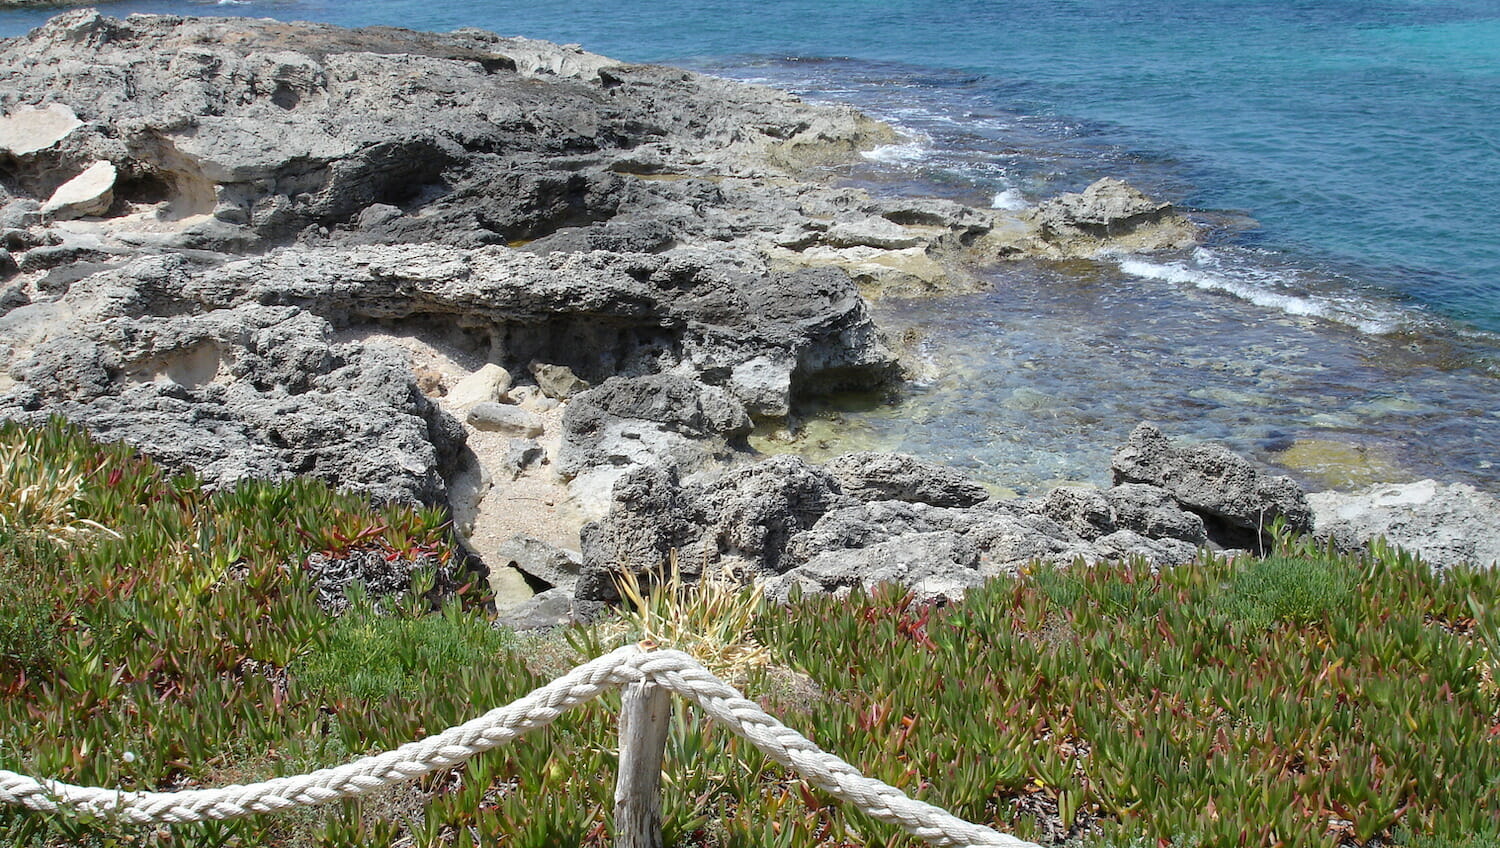 Rocas-y-vegetación-junto-al-mar-Formentera